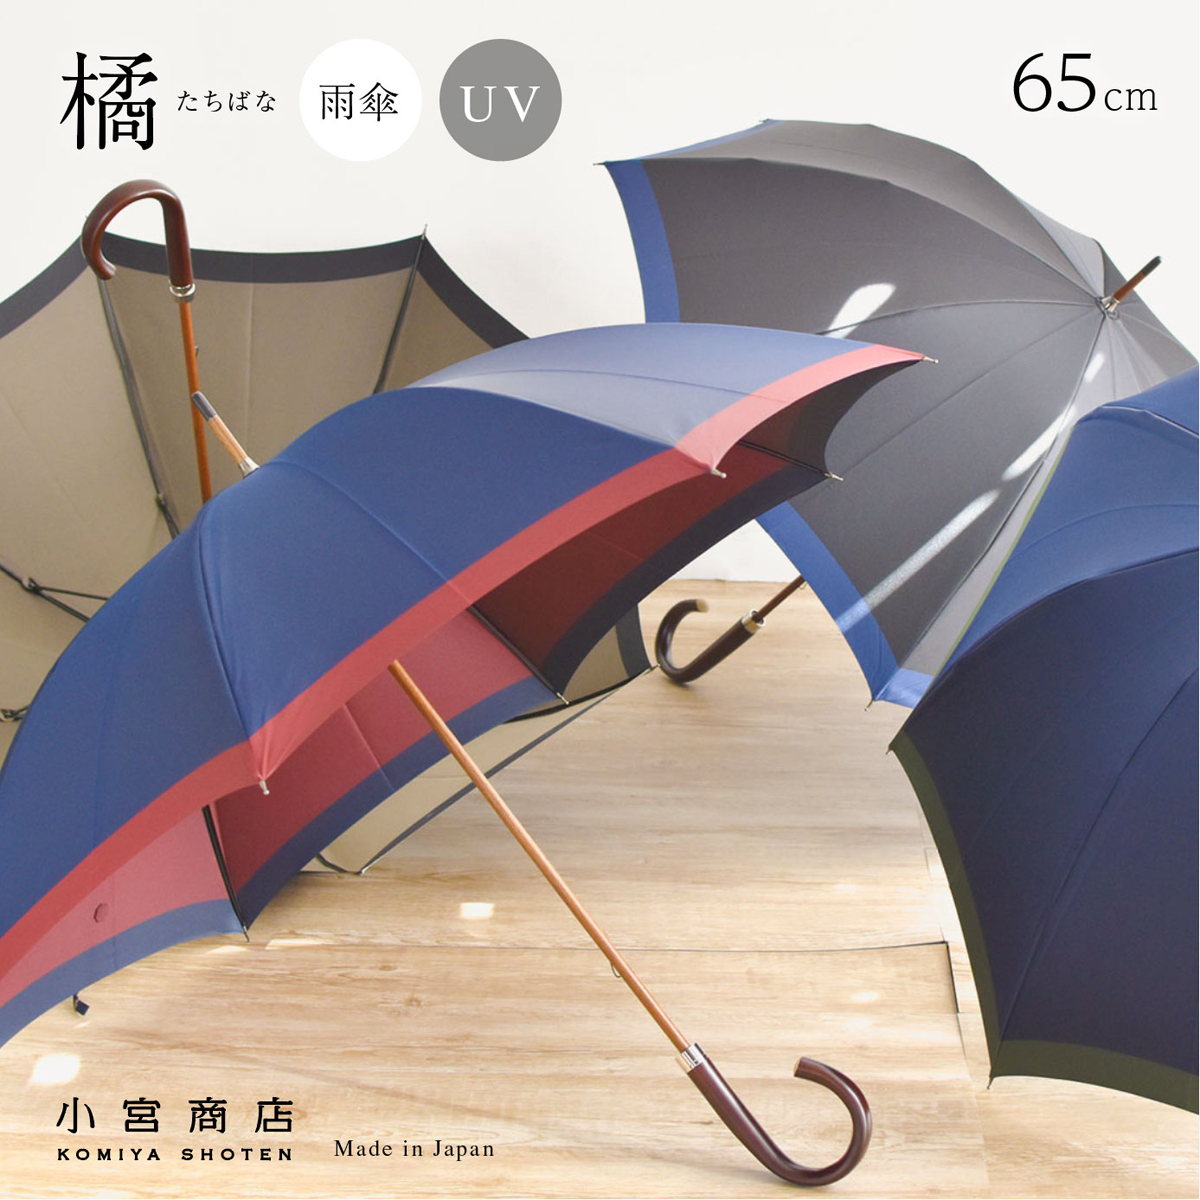 橘－たちばな－甲州織65cm8本骨のメンズ雨傘・雨晴兼用長傘「日本製の